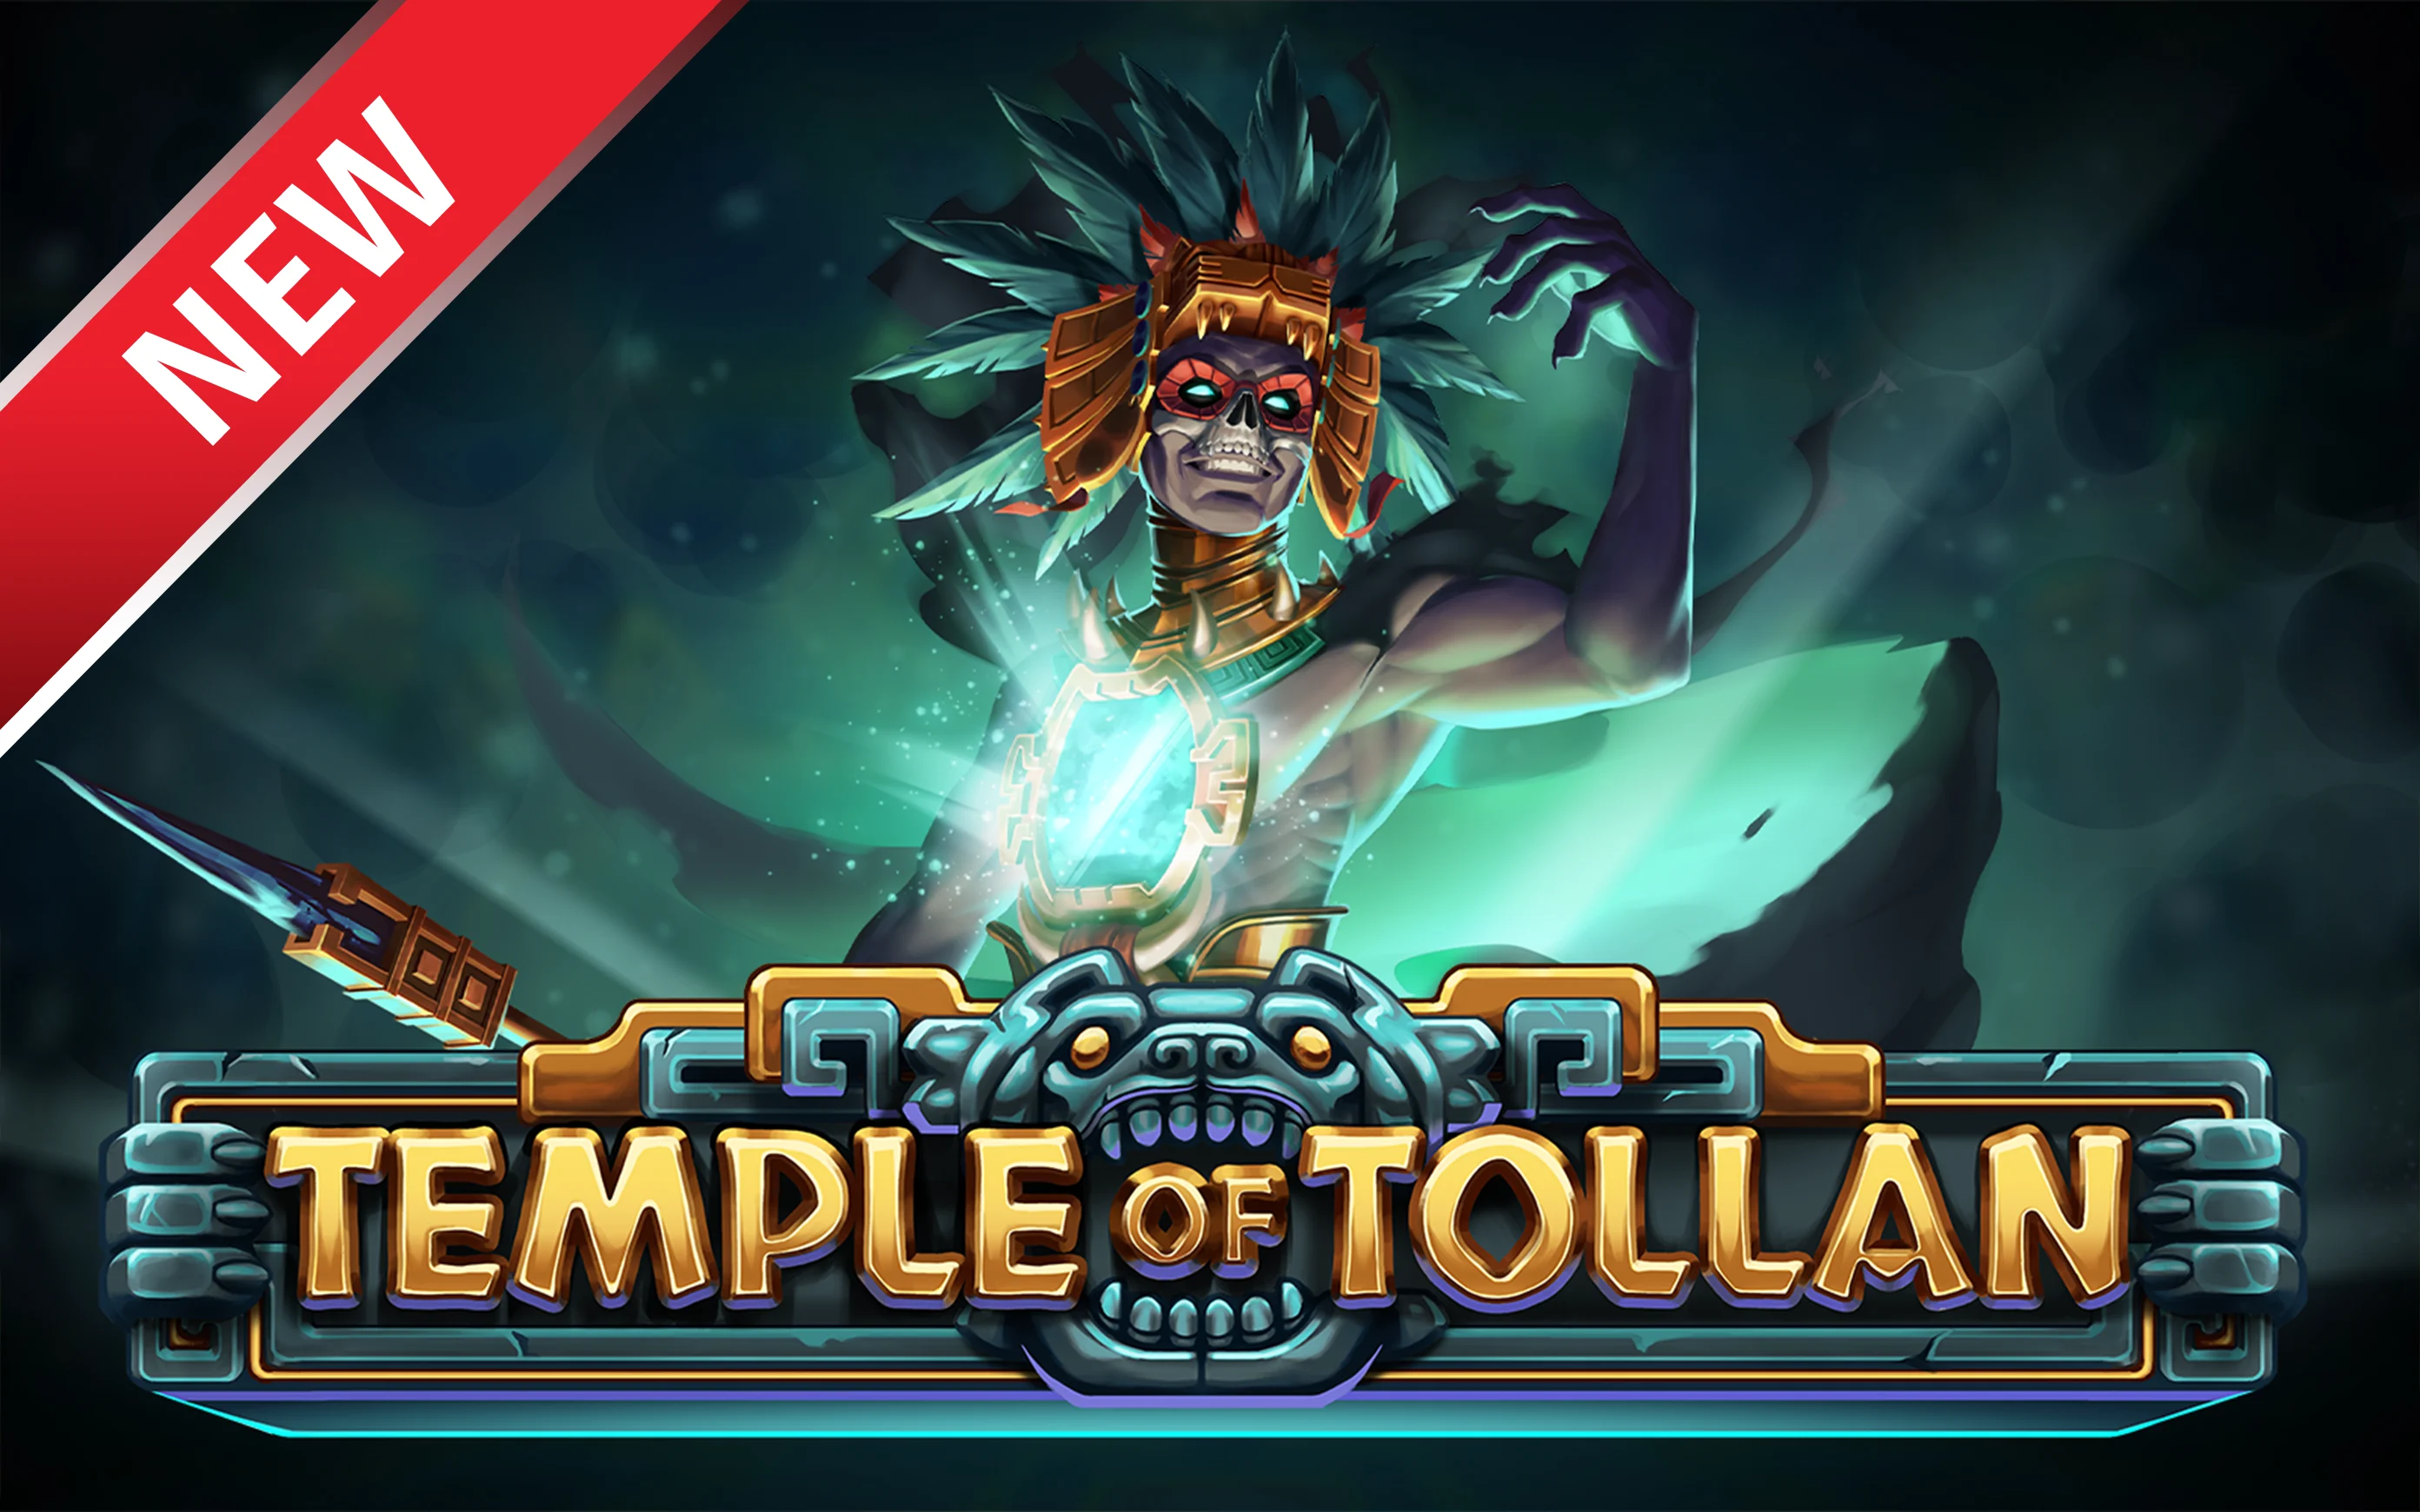 Juega a Temple of Tollan en el casino en línea de Starcasino.be